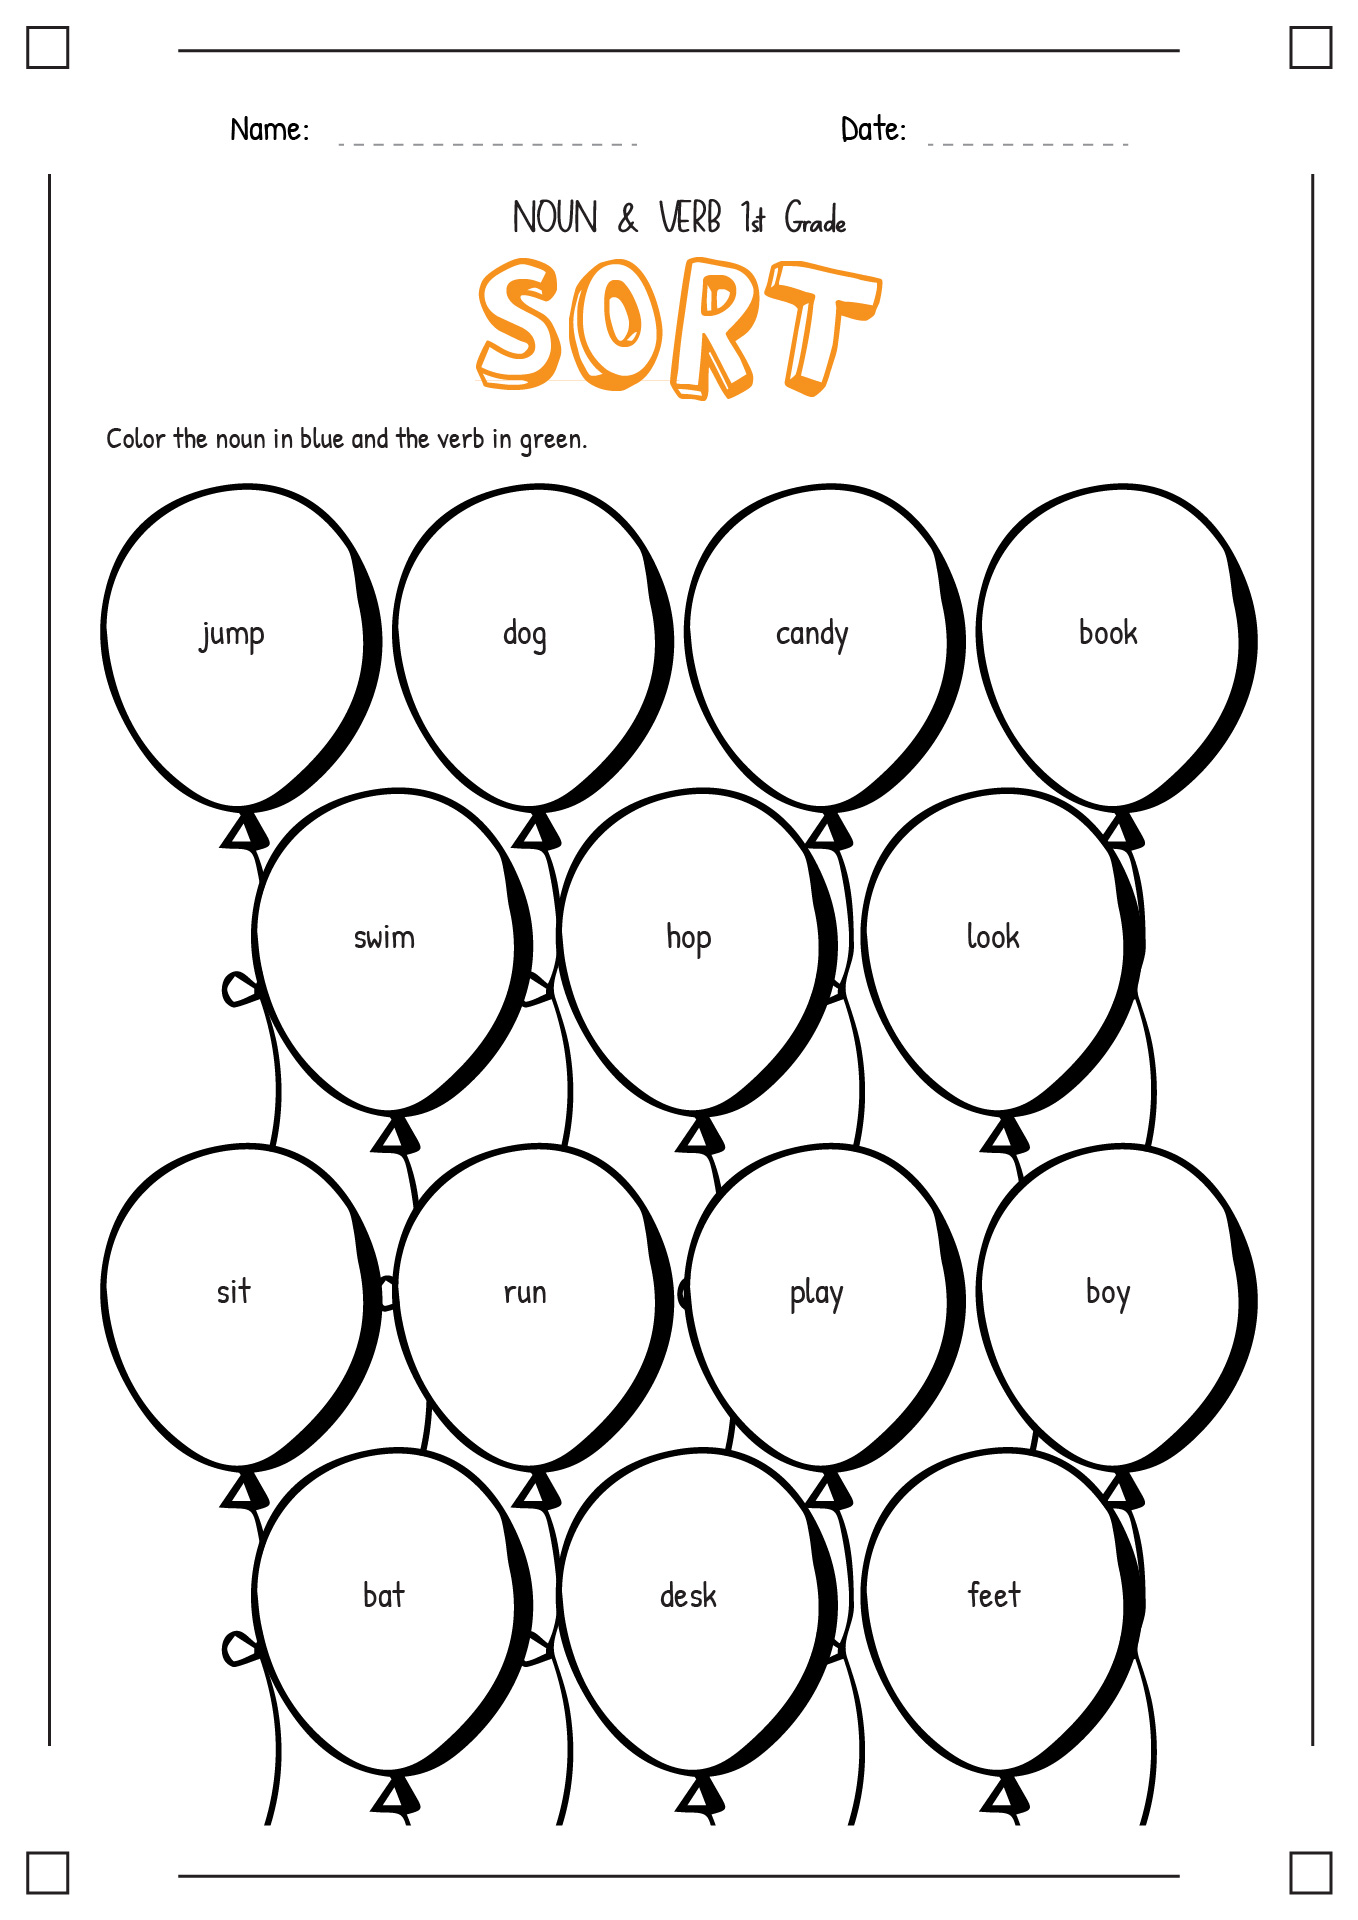 Noun and Verb Sort First Grade Image